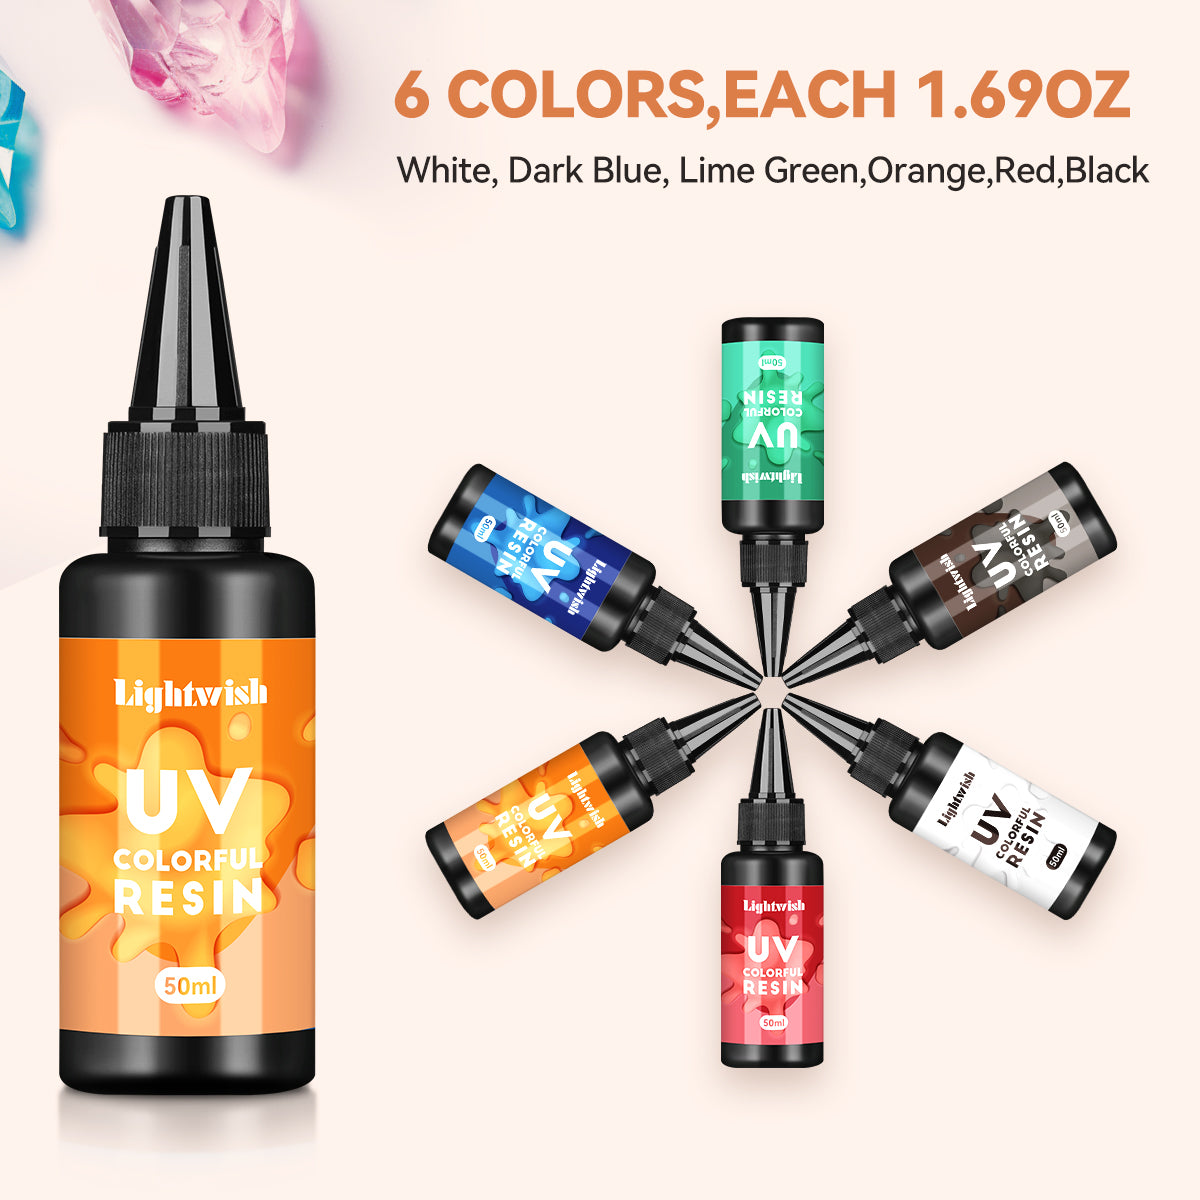 Résine UV colorée, kit de résine UV 6 couleurs (50 g chacune)